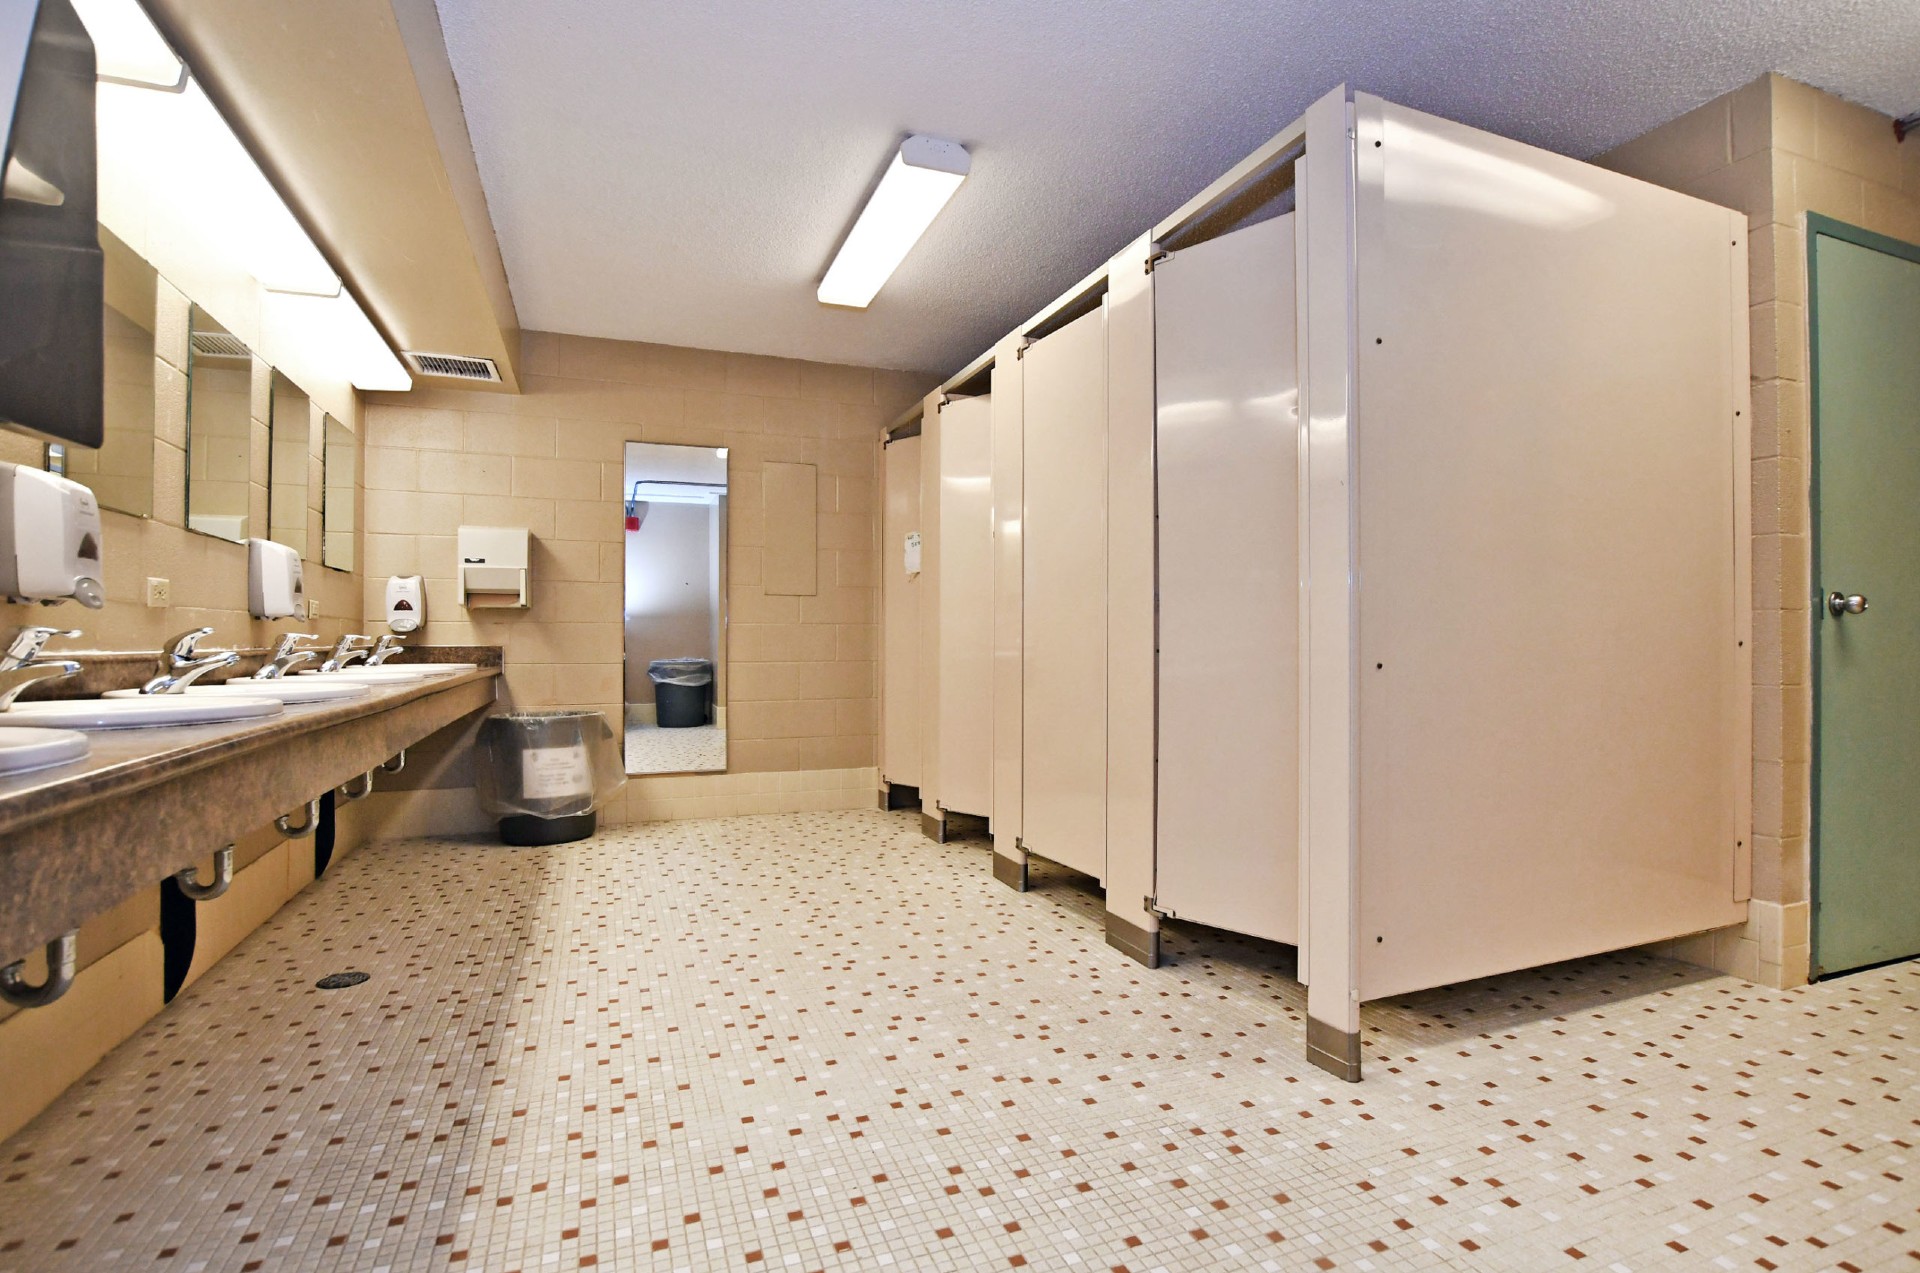 Photo des toilettes communes de la résidence Bethune